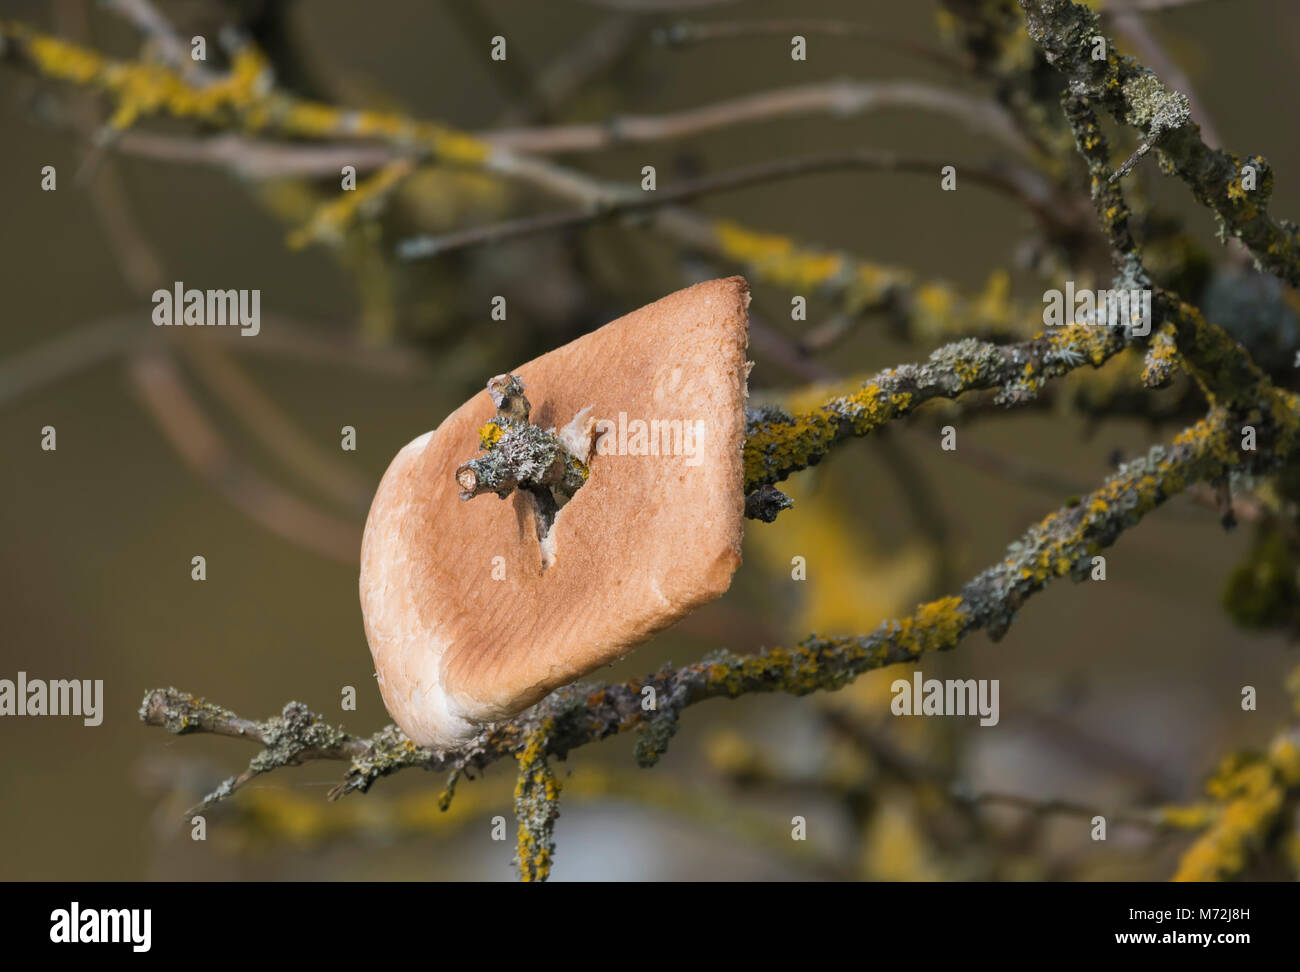 Fetta di pane bianco impalato su un ramoscello di un albero, attirando gli uccelli per alimentare per la fauna selvatica fotografi. Esche uccelli, cibo che offre, rispetto, crosta di pane Foto Stock